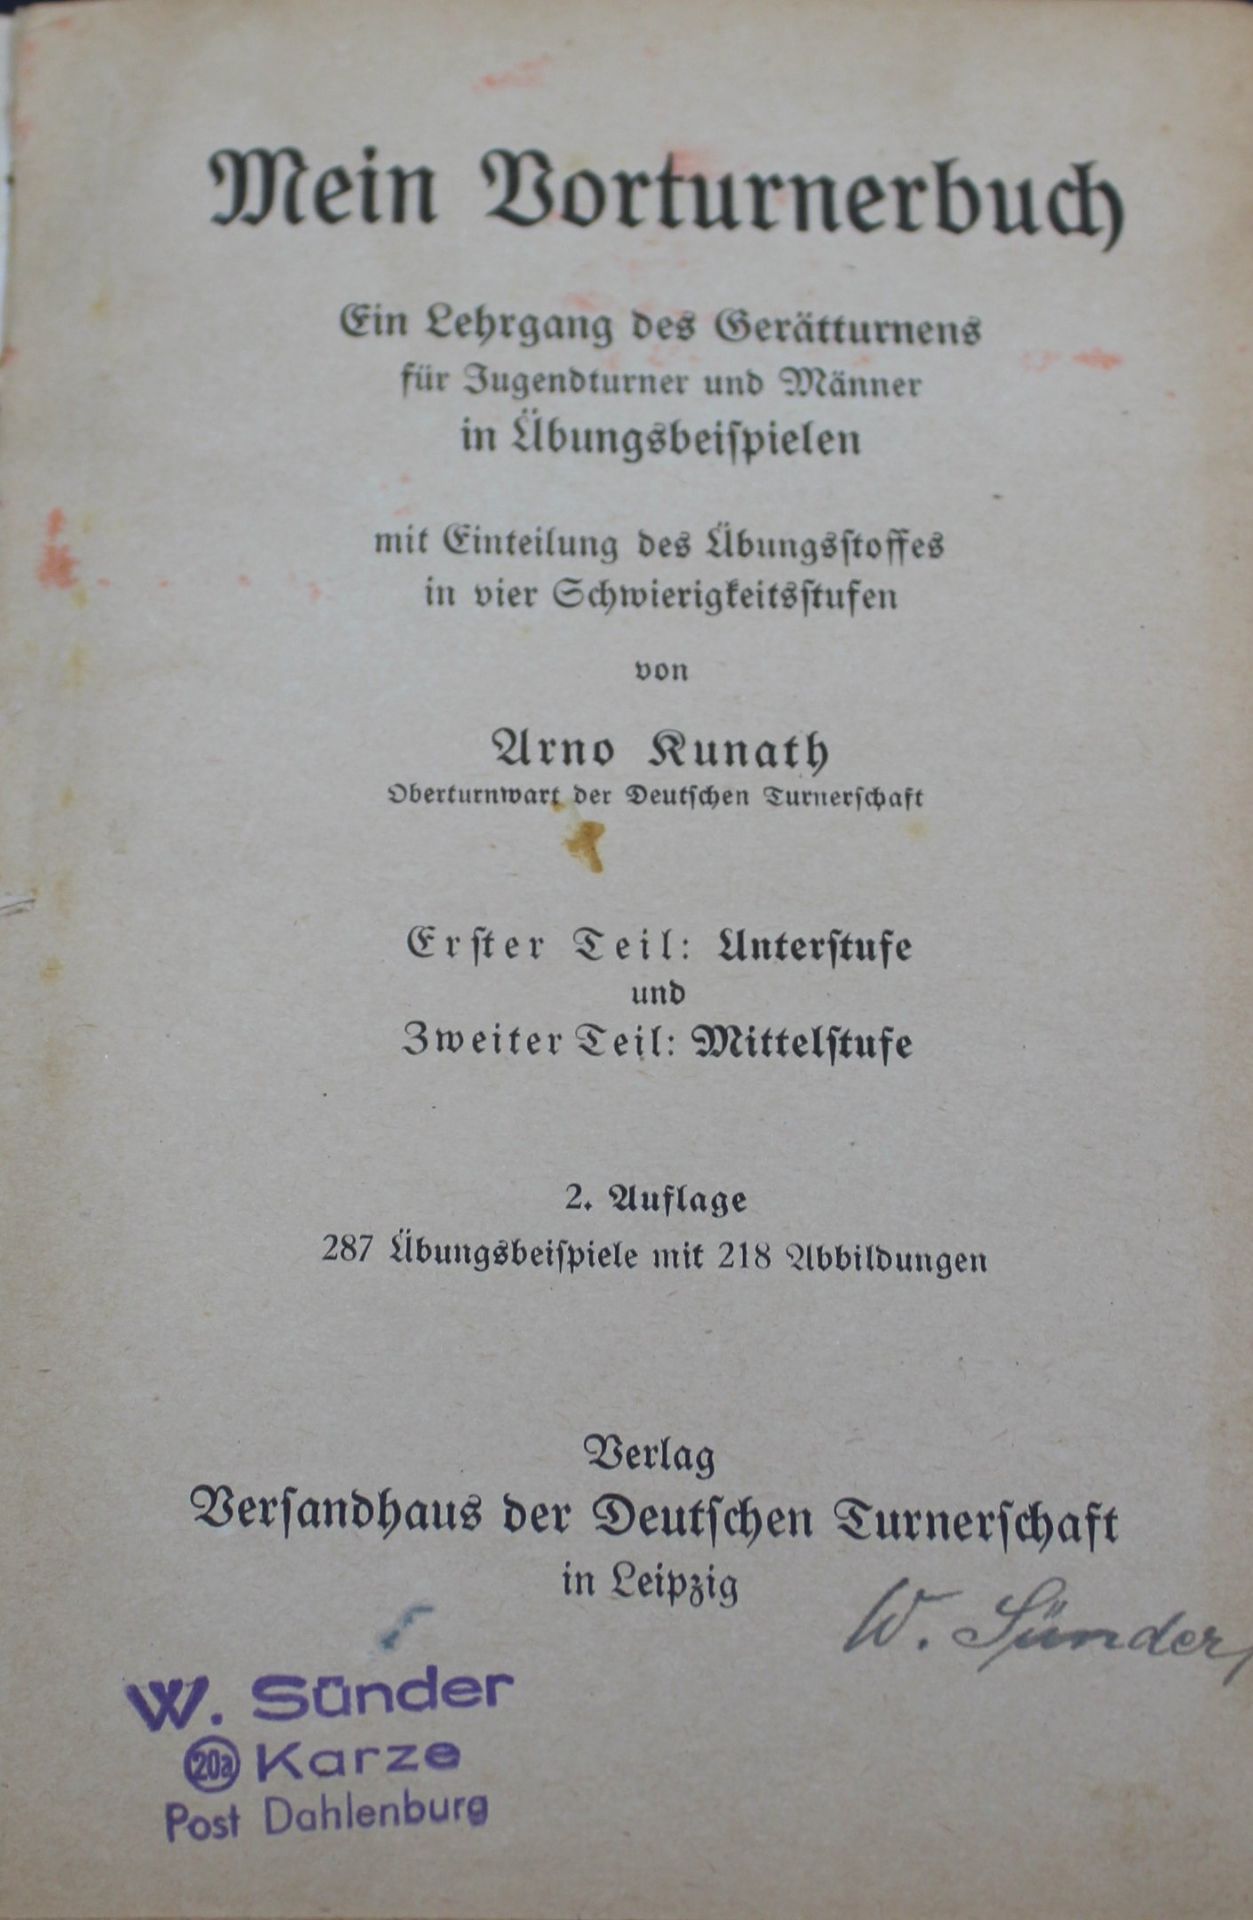 2x Literatur über Sportlehre, beide um 1912, Altersspuren. - Bild 5 aus 5